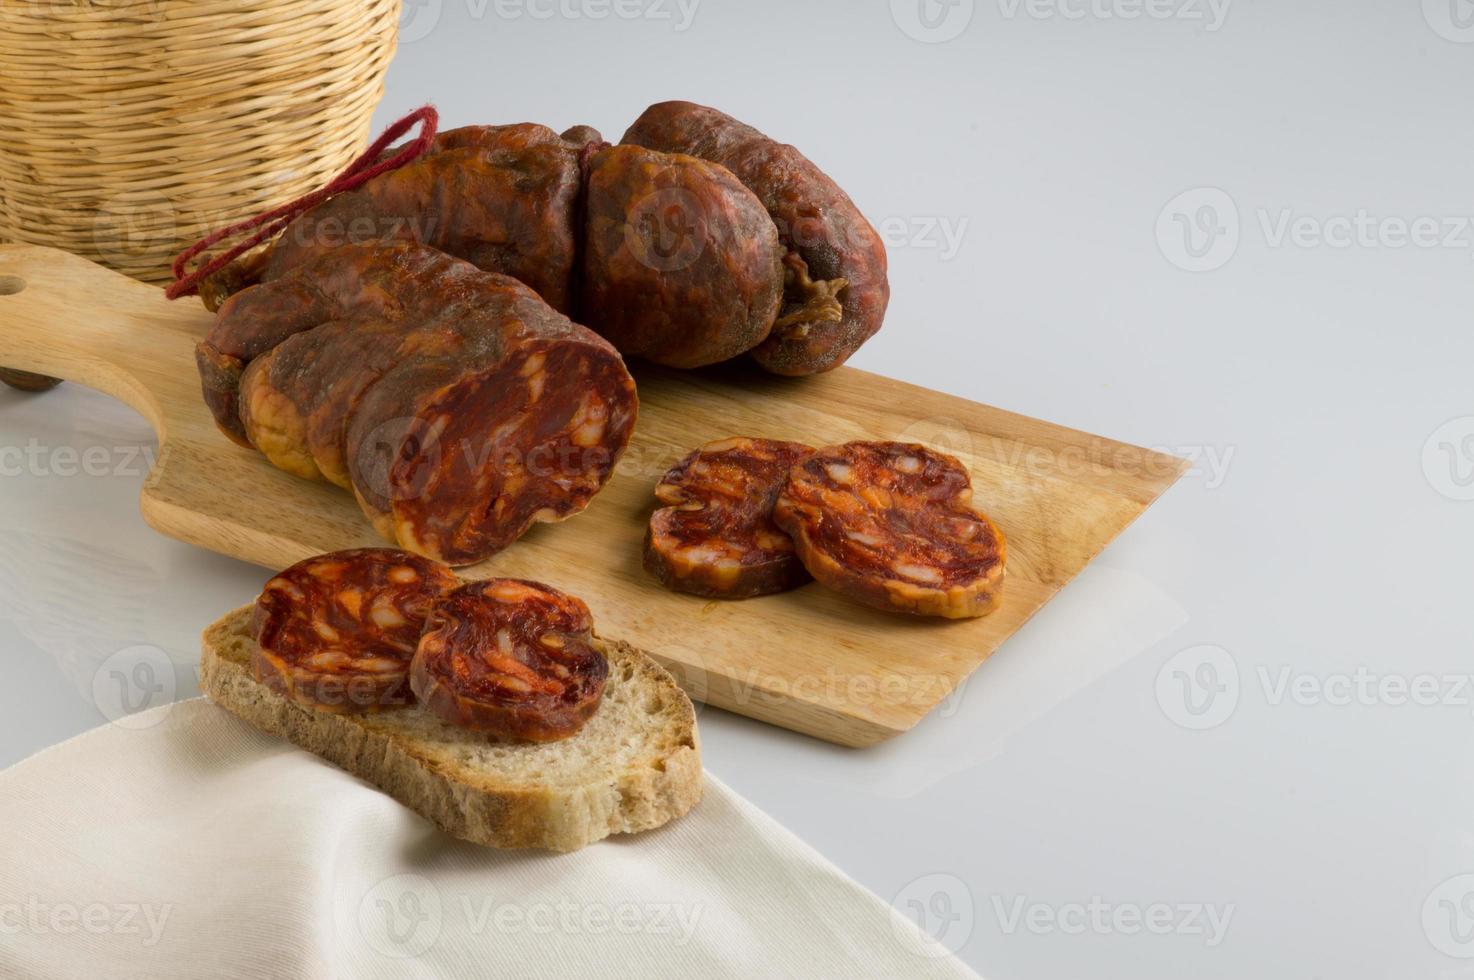 soppressata, korv, italiensk salami typisk för kalabrien foto